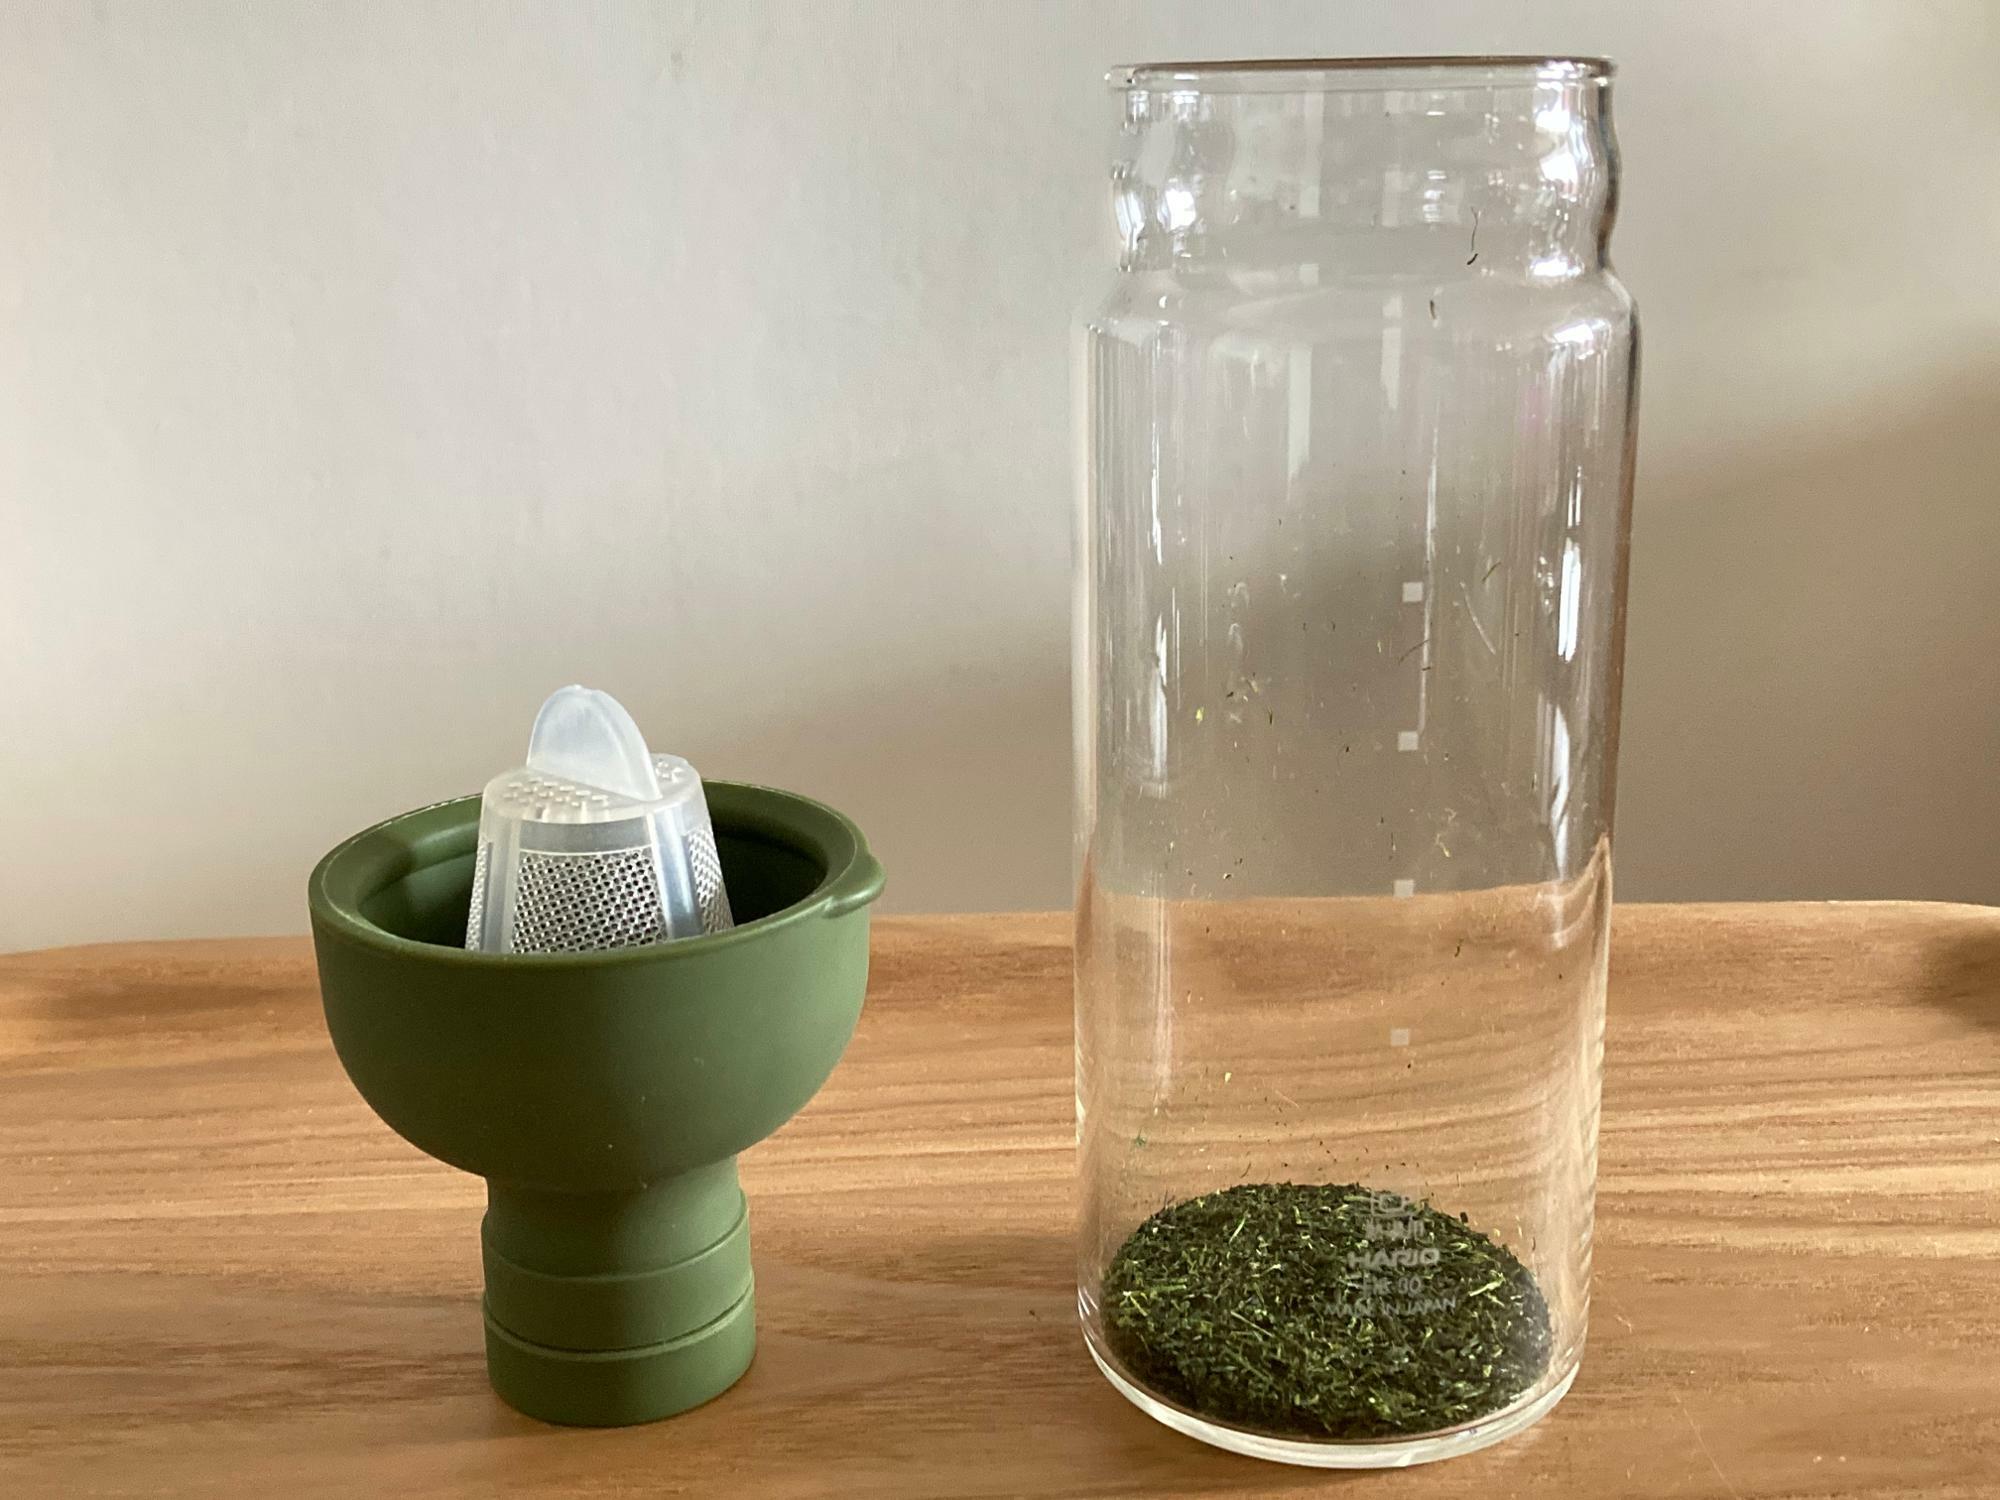 写真のボトルは水出し茶専用ボトルのハリオ「フィルターインボトル」。シリコンのキャップに茶こしが付いています。本体は耐熱ガラス製。